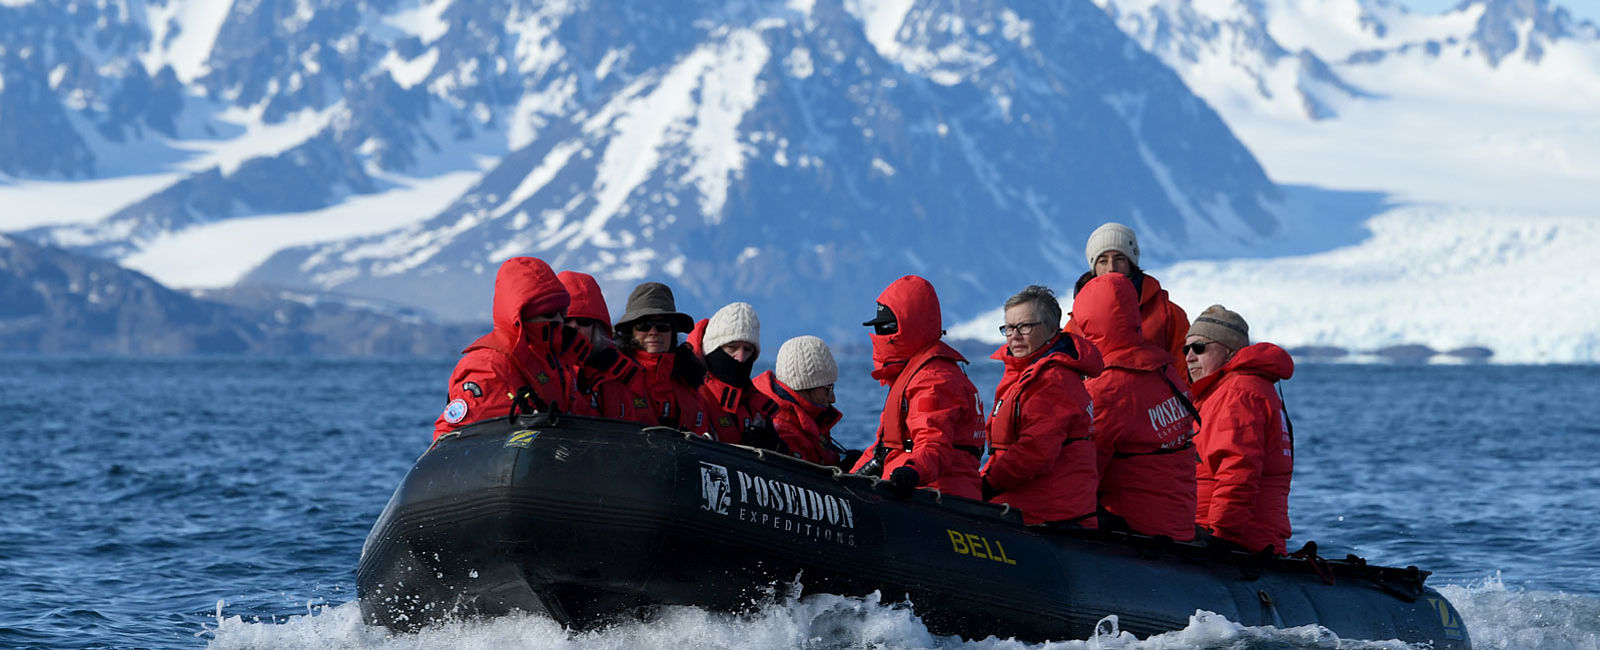 KREUZFAHRT NEWS
 Poseidon Cruises startet größtes Spitzbergen-Programm 
